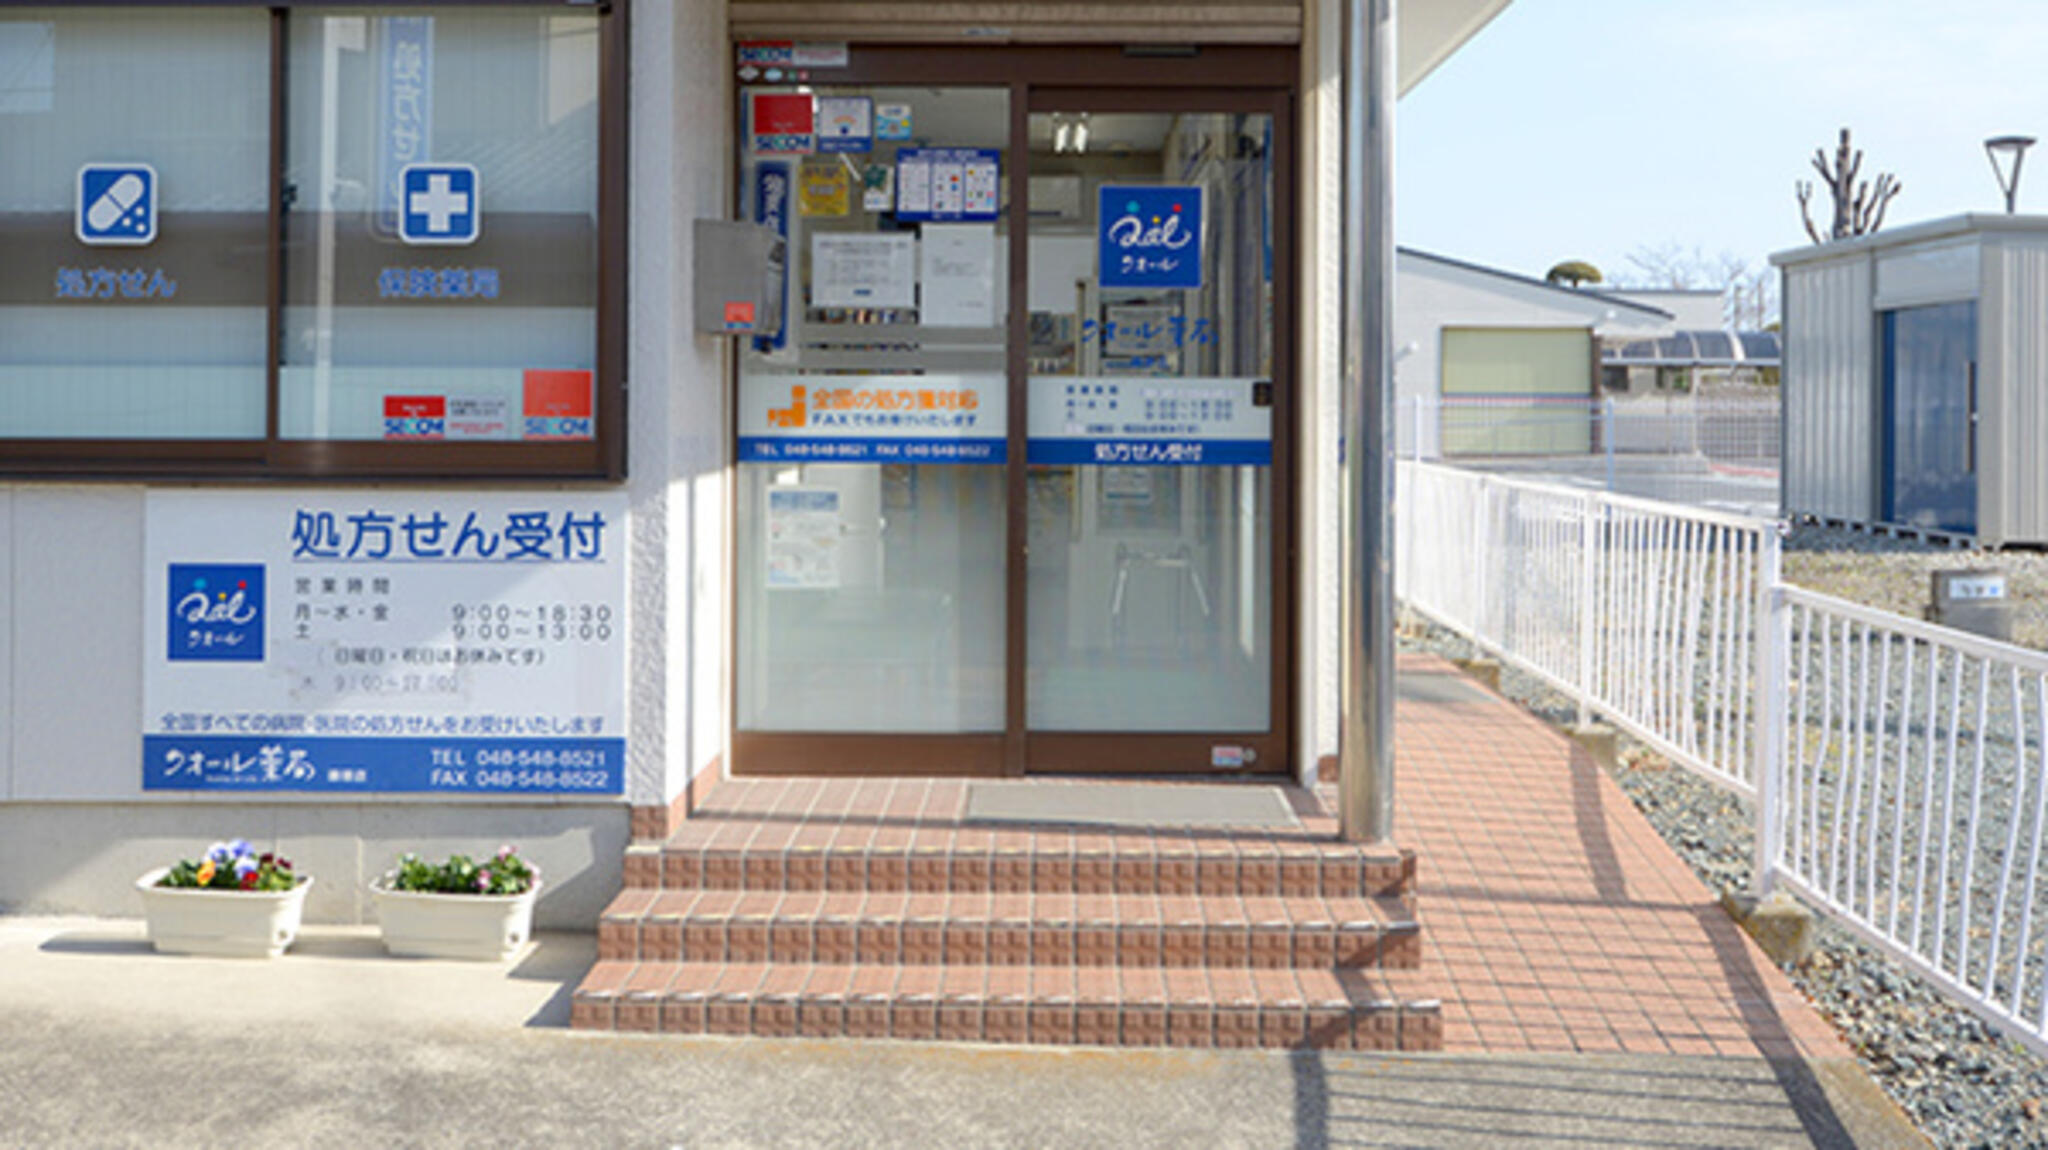 クオール薬局 鎌塚店の代表写真1